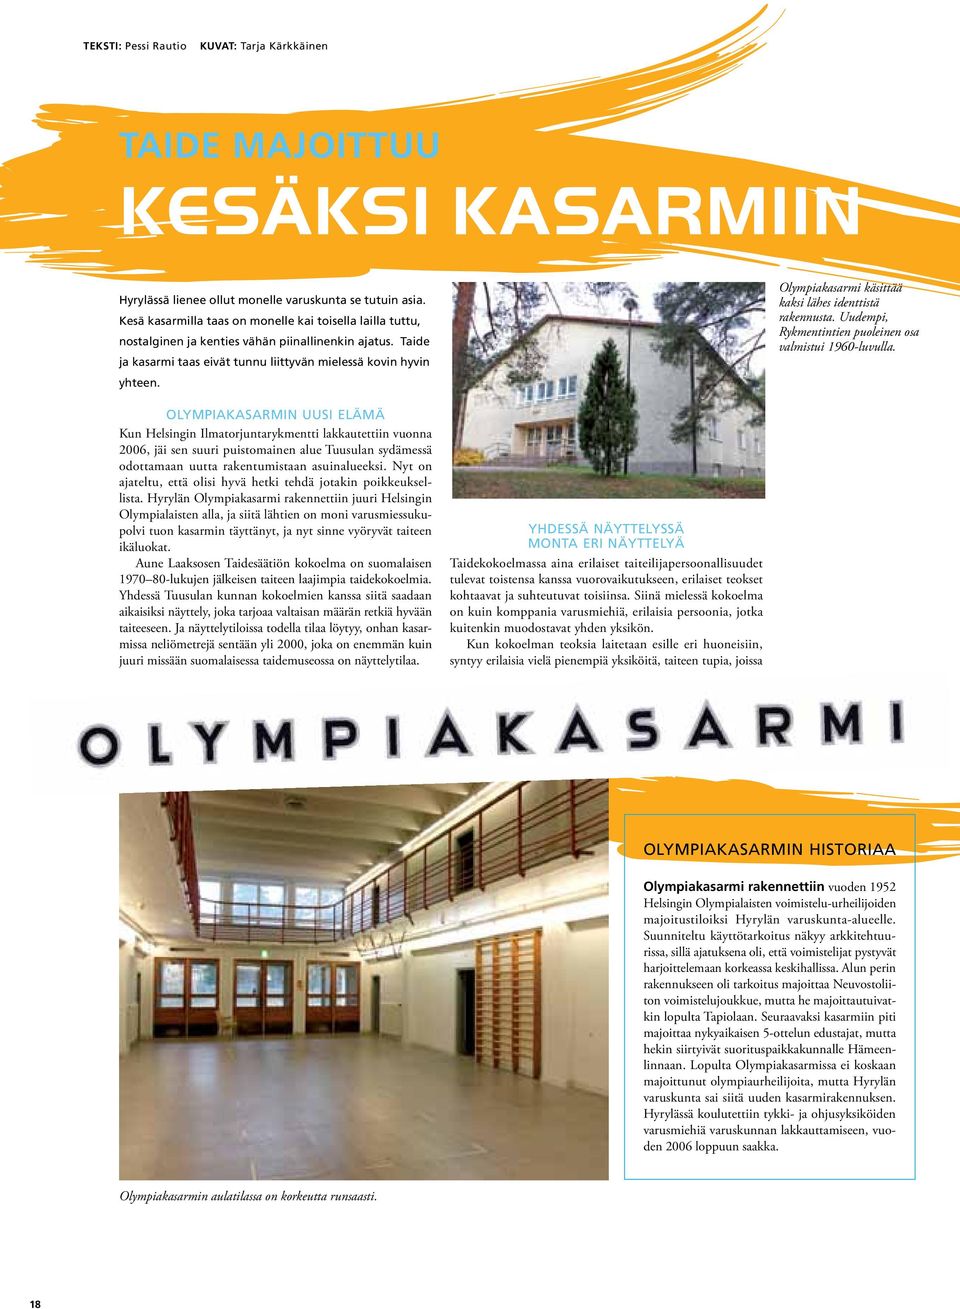 Olympiakasarmi käsittää kaksi lähes identtistä rakennusta. Uudempi, Rykmentintien puoleinen osa valmistui 1960-luvulla.